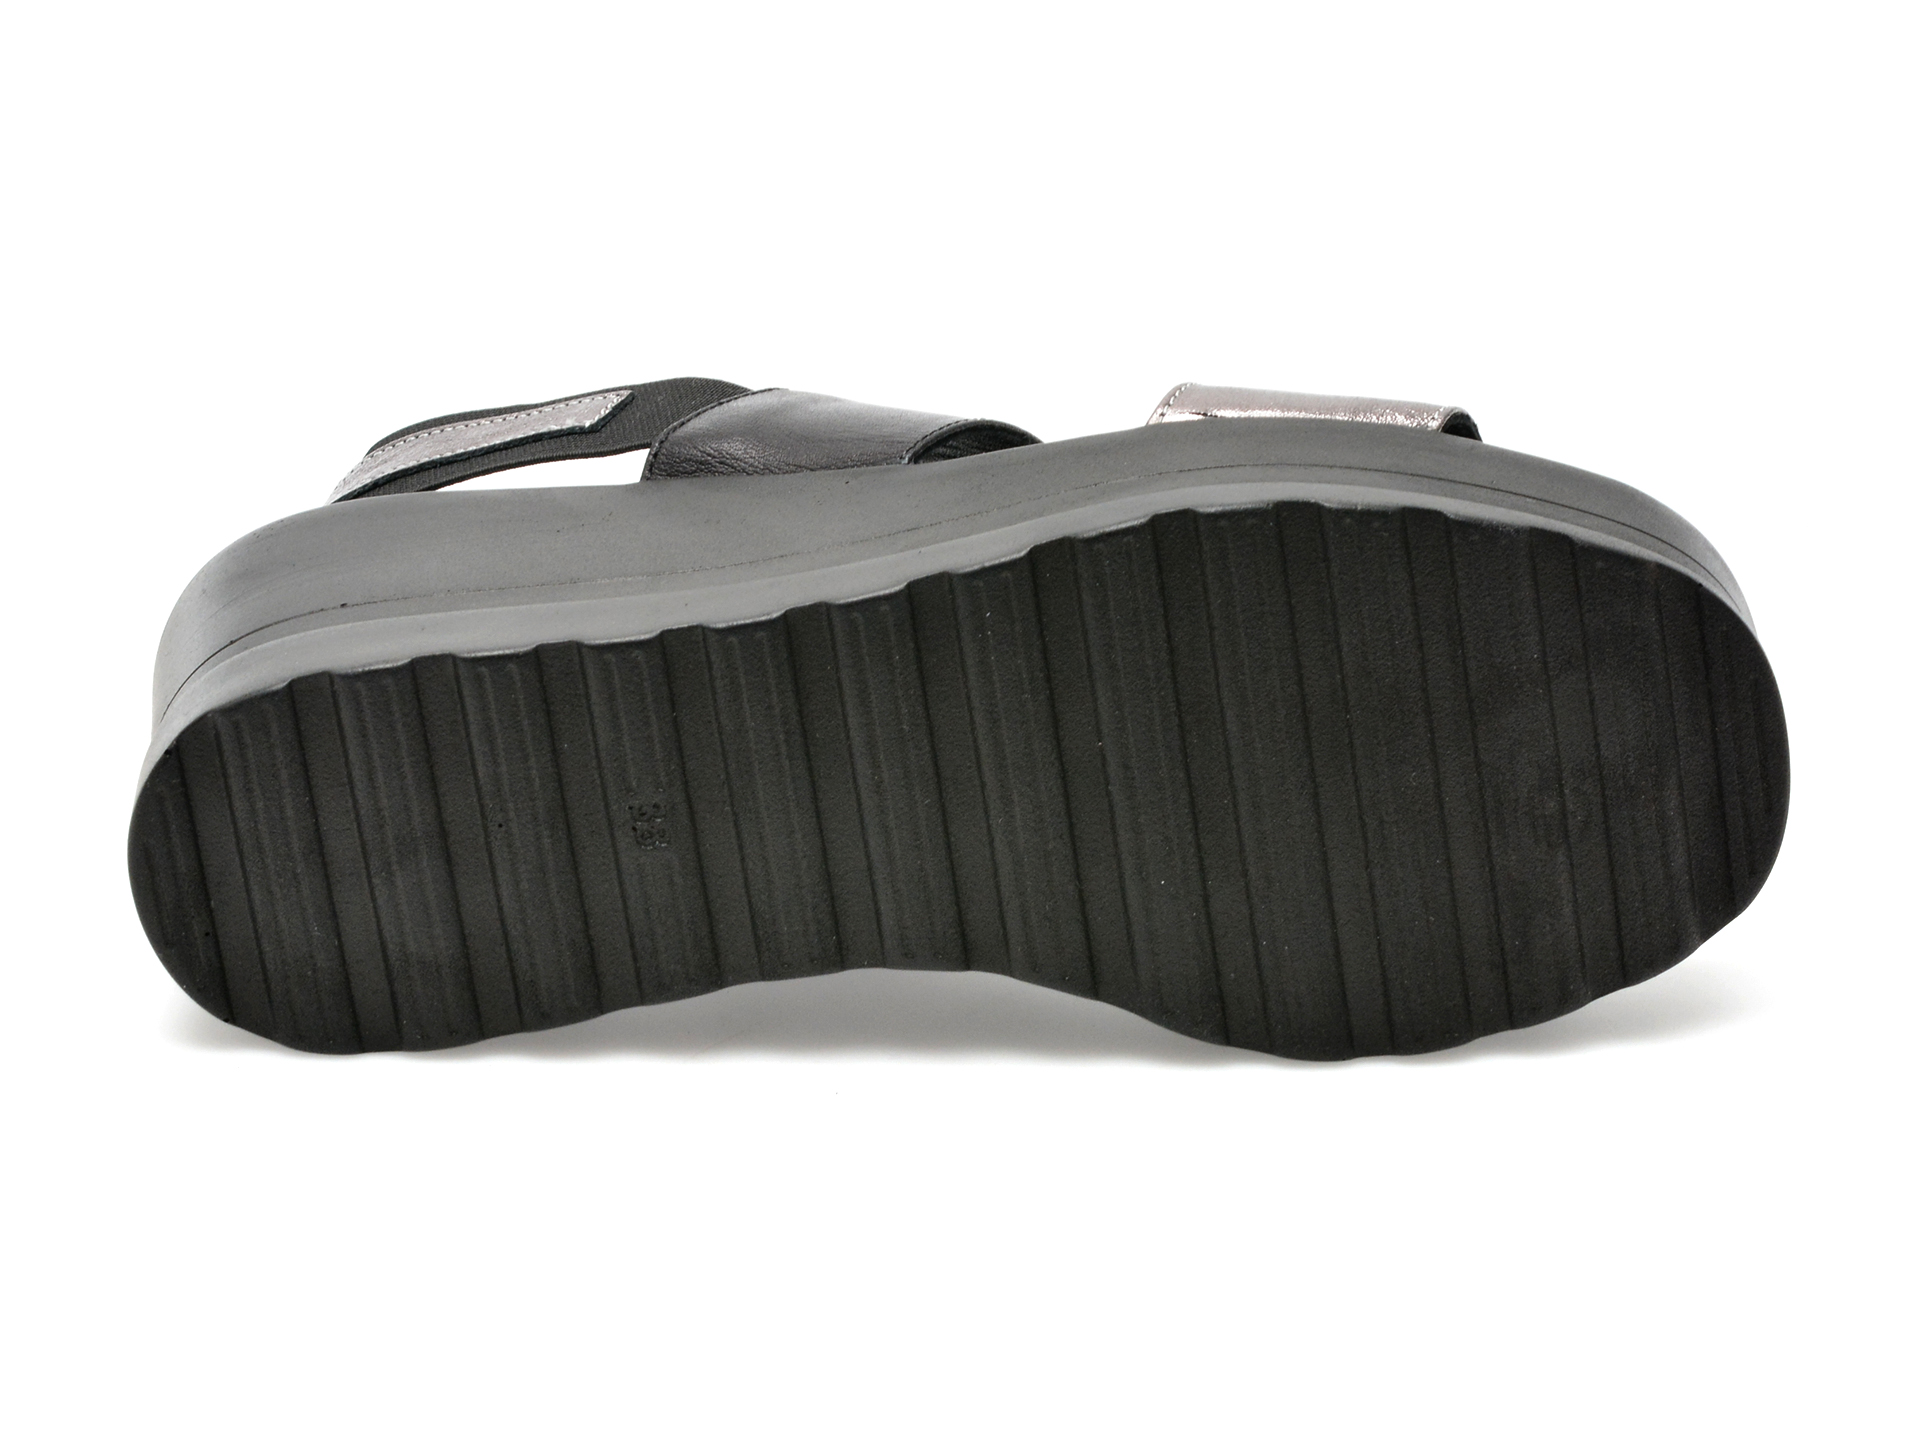 Sandale LABOUR negre, EMK102, din piele naturala